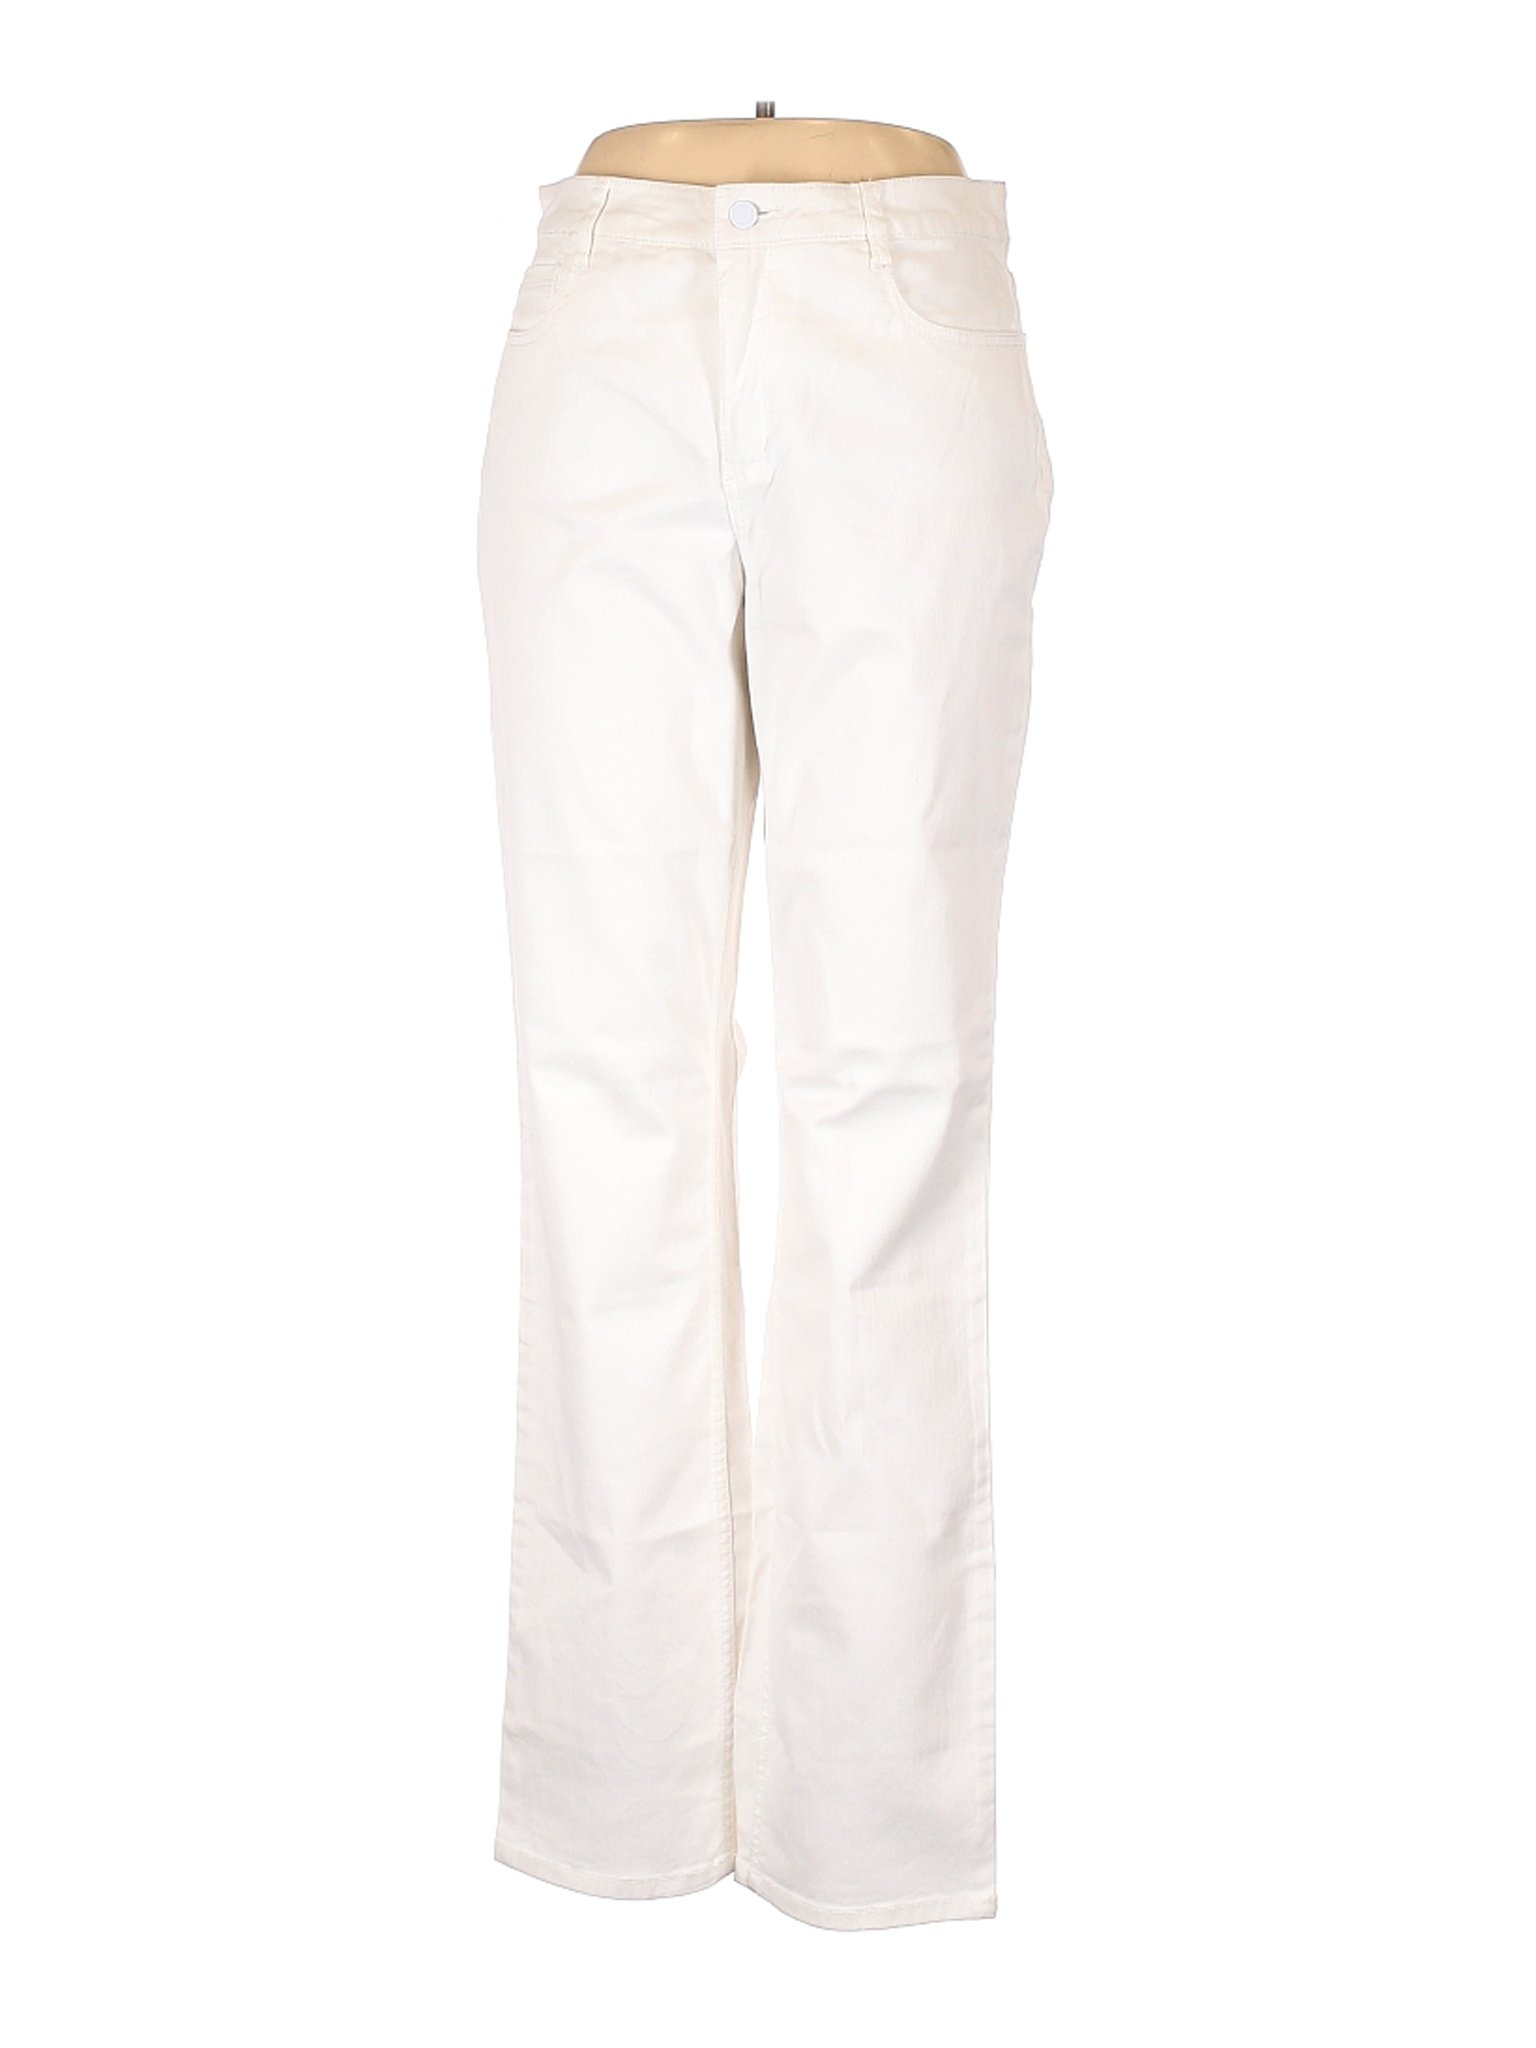 Jones New York Women White Jeans 12 | eBay